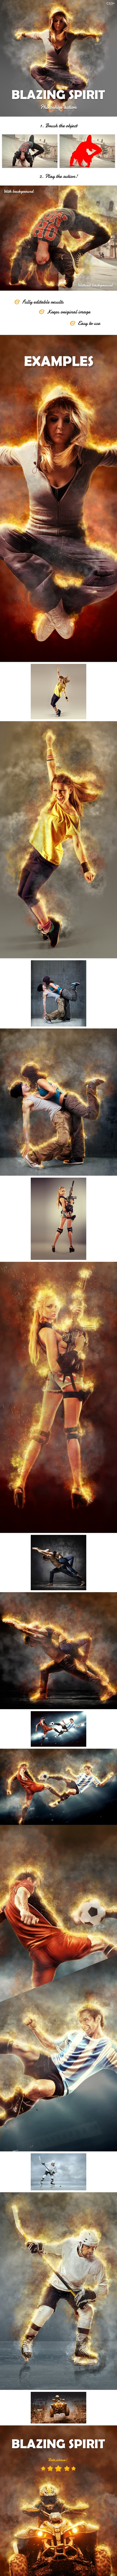 Blazing Spirit - Fire Photoshop Action v1.01